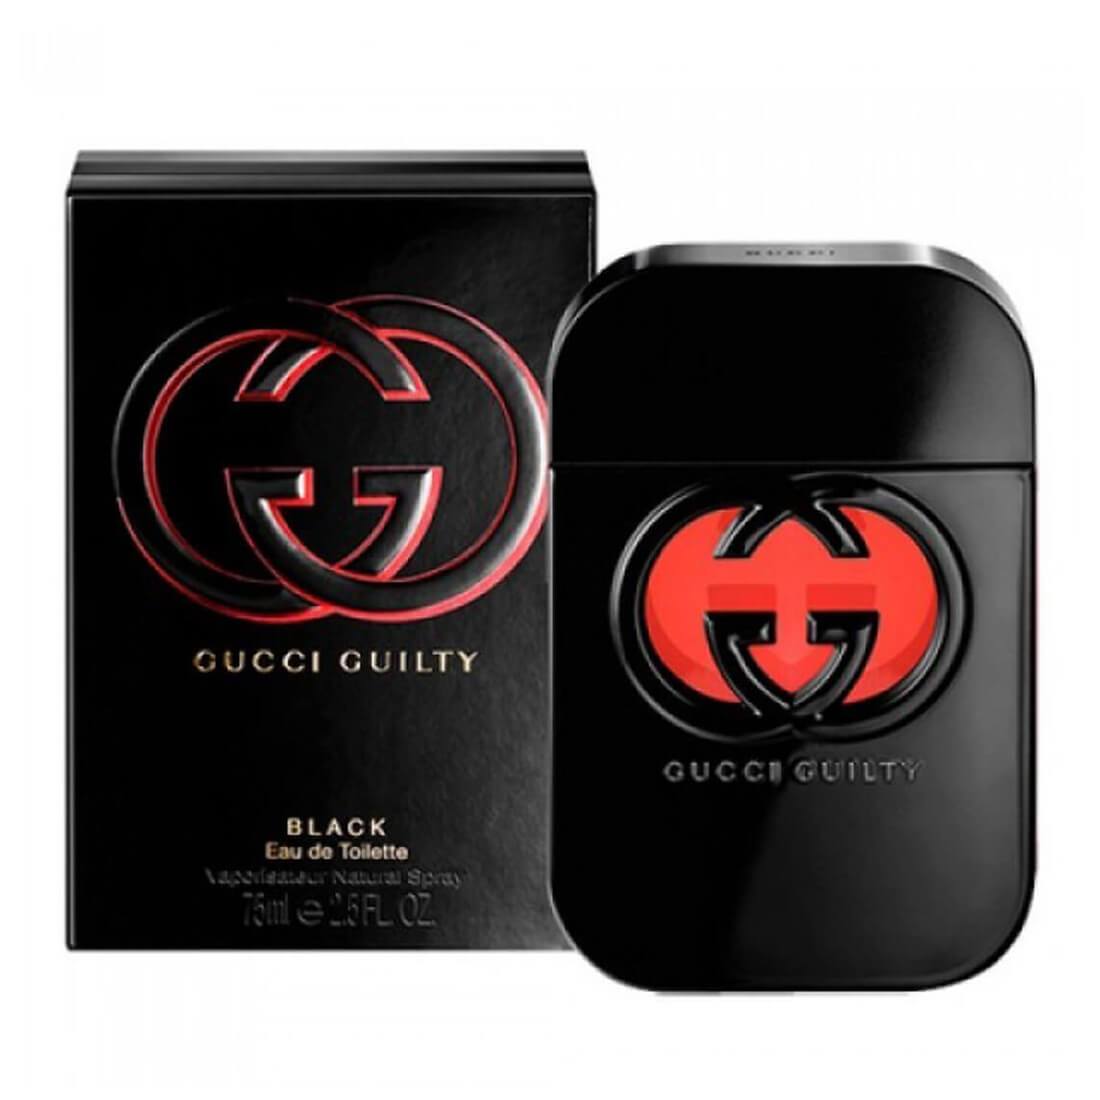 Gucci Guilty Black Eau De Toilette For Women